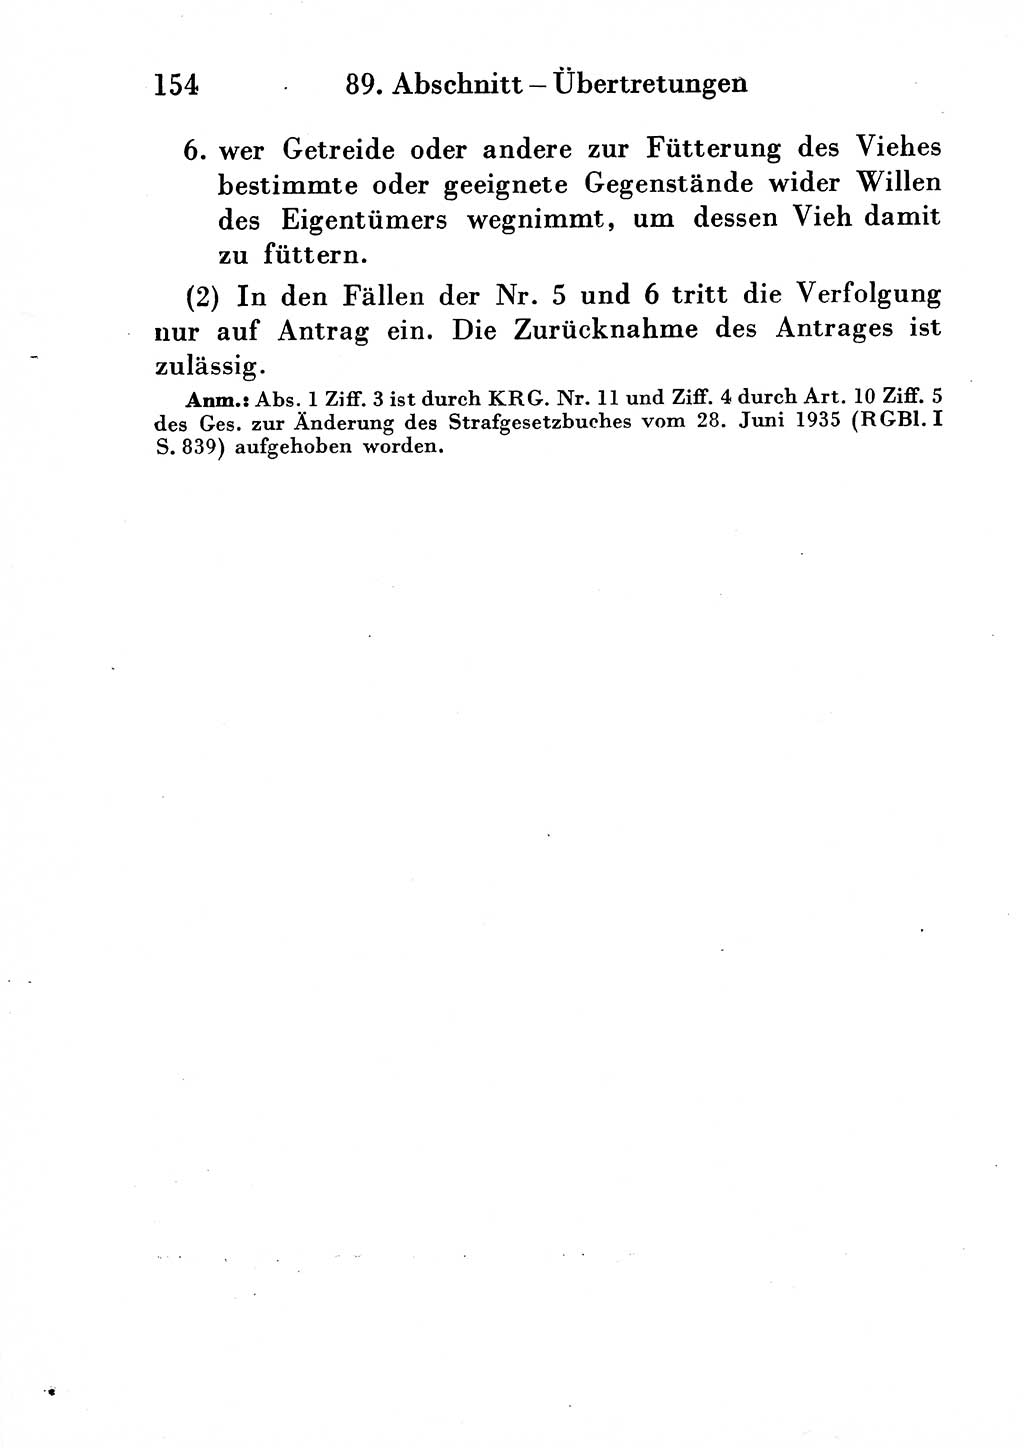 Strafgesetzbuch (StGB) und andere Strafgesetze [Deutsche Demokratische Republik (DDR)] 1954, Seite 154 (StGB Strafges. DDR 1954, S. 154)